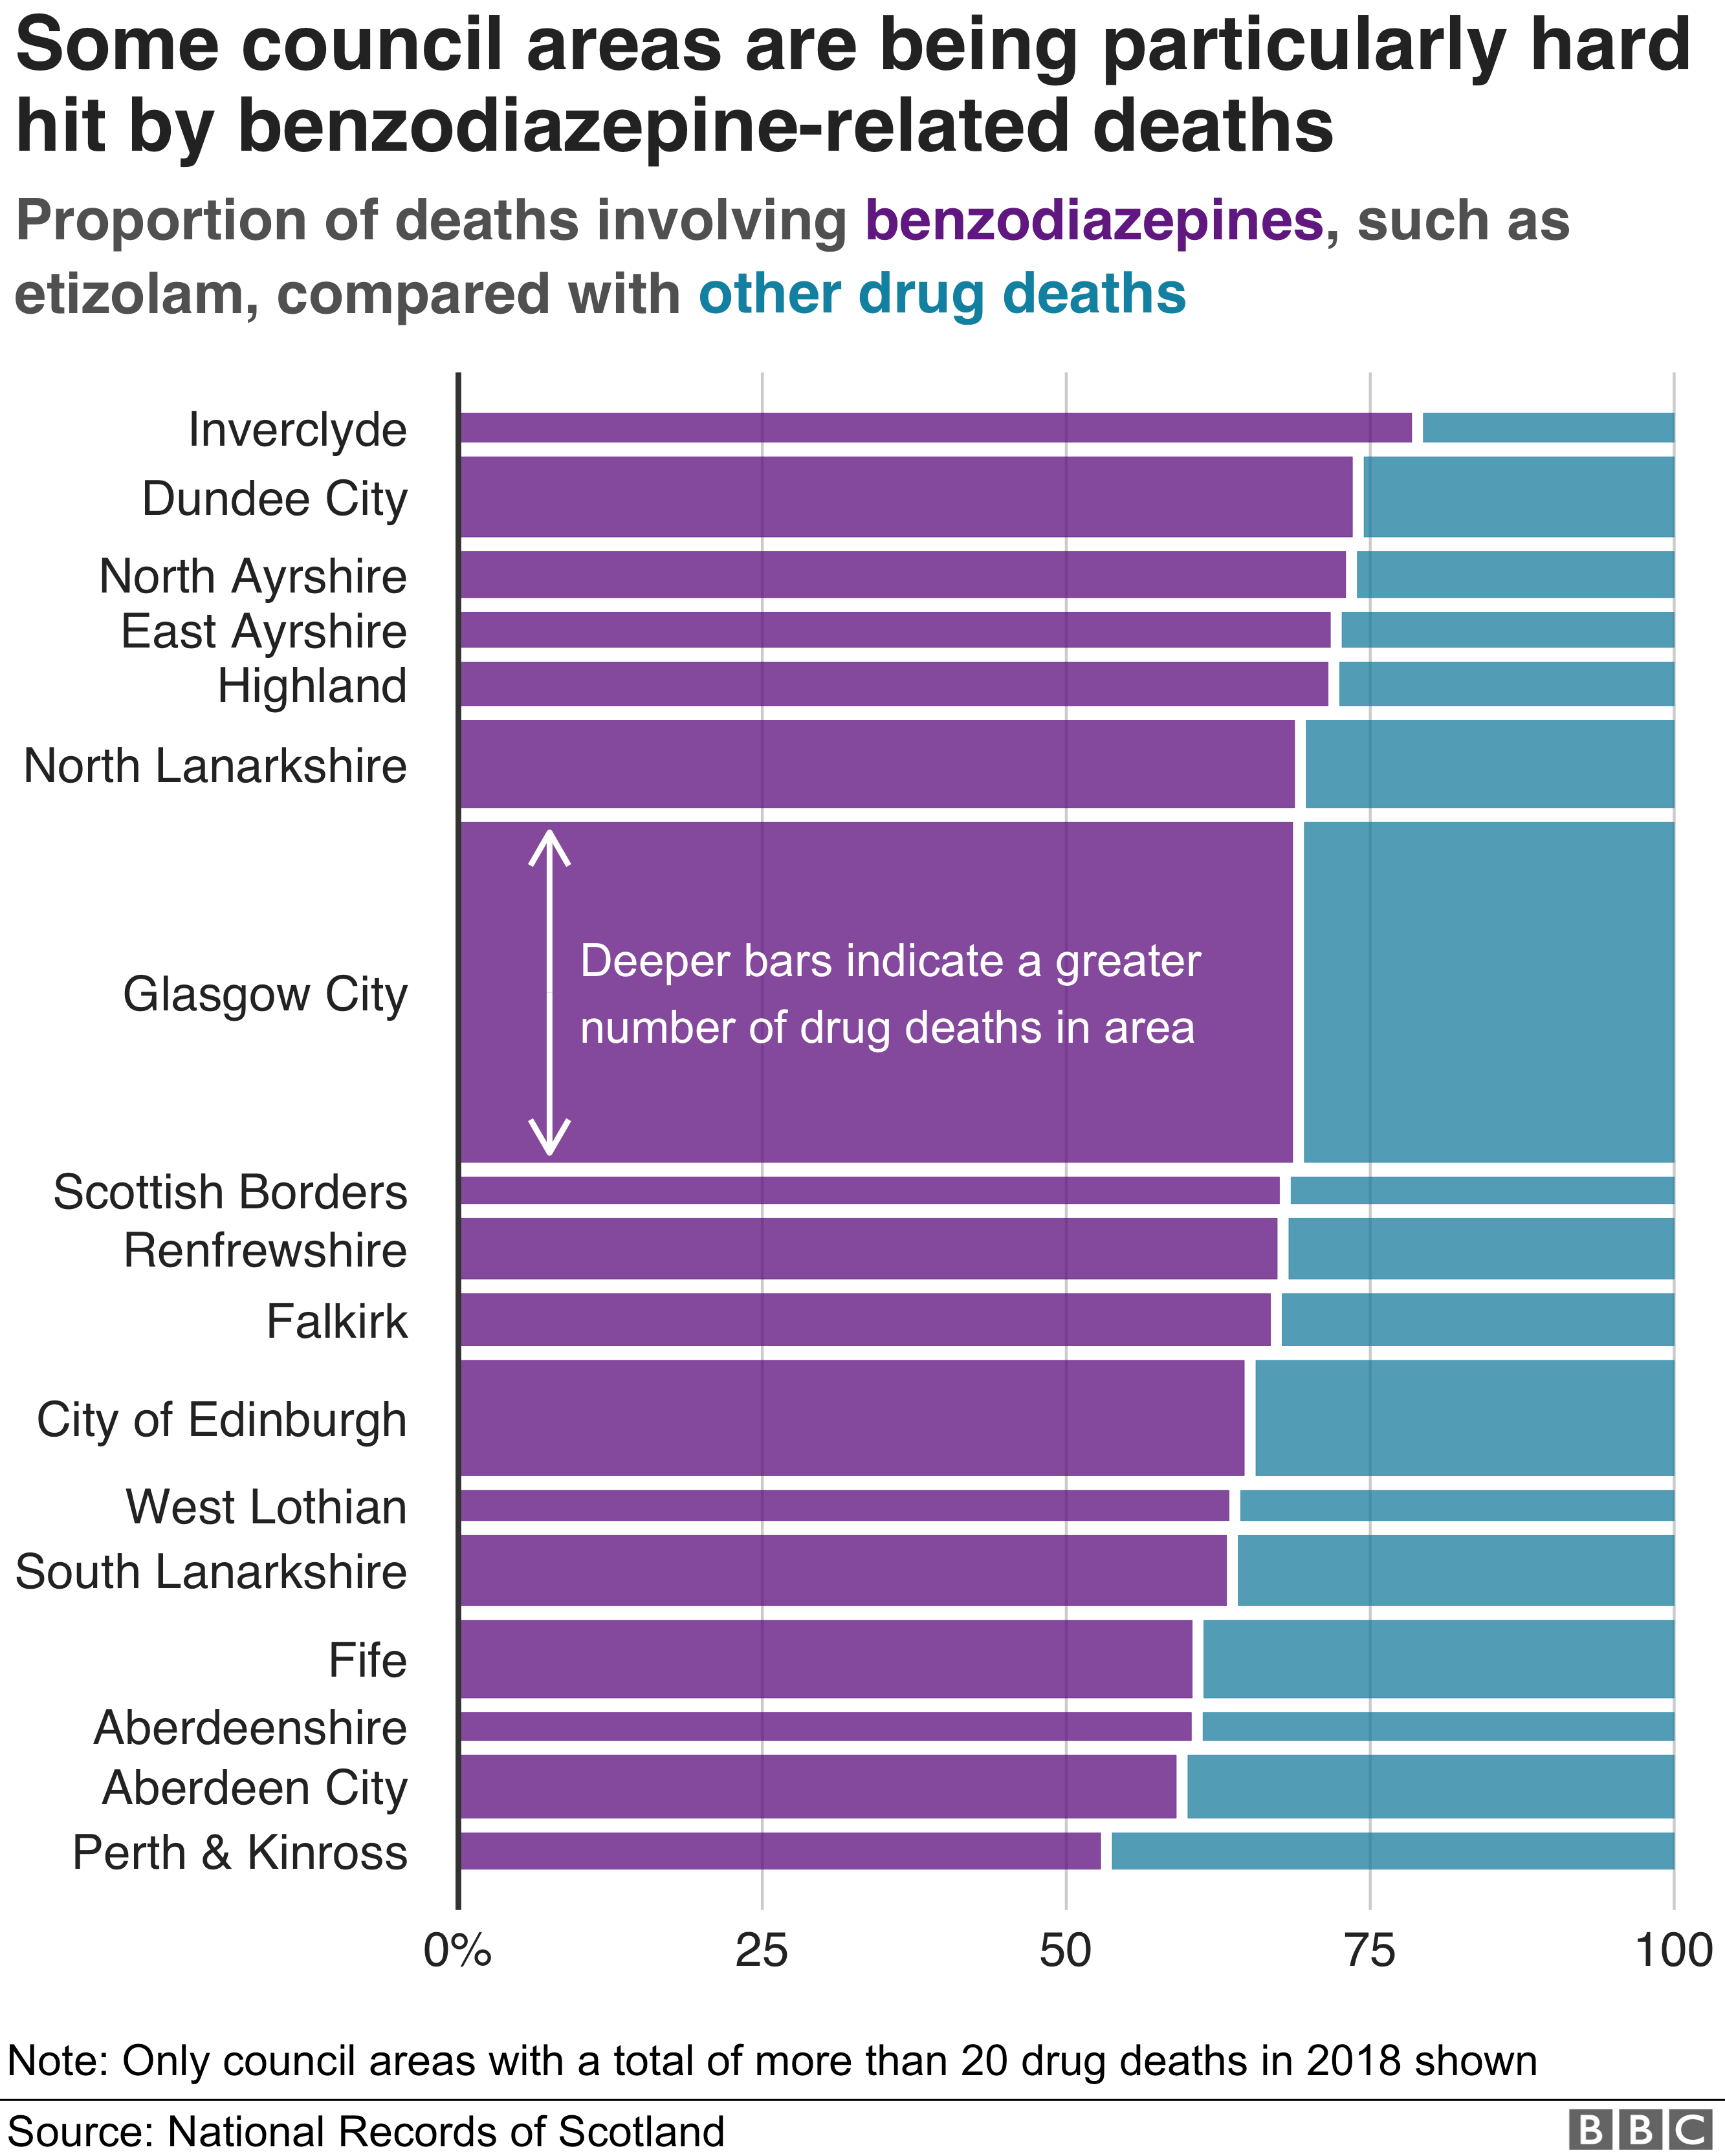 В Инверклайде более трех четвертей смертей от наркотиков связаны с бензодиазепинами. Ни в одном из муниципальных районов, где в 2018 году было зарегистрировано более 20 смертей от наркотиков, менее половины случаев смерти от бензодиазепинов